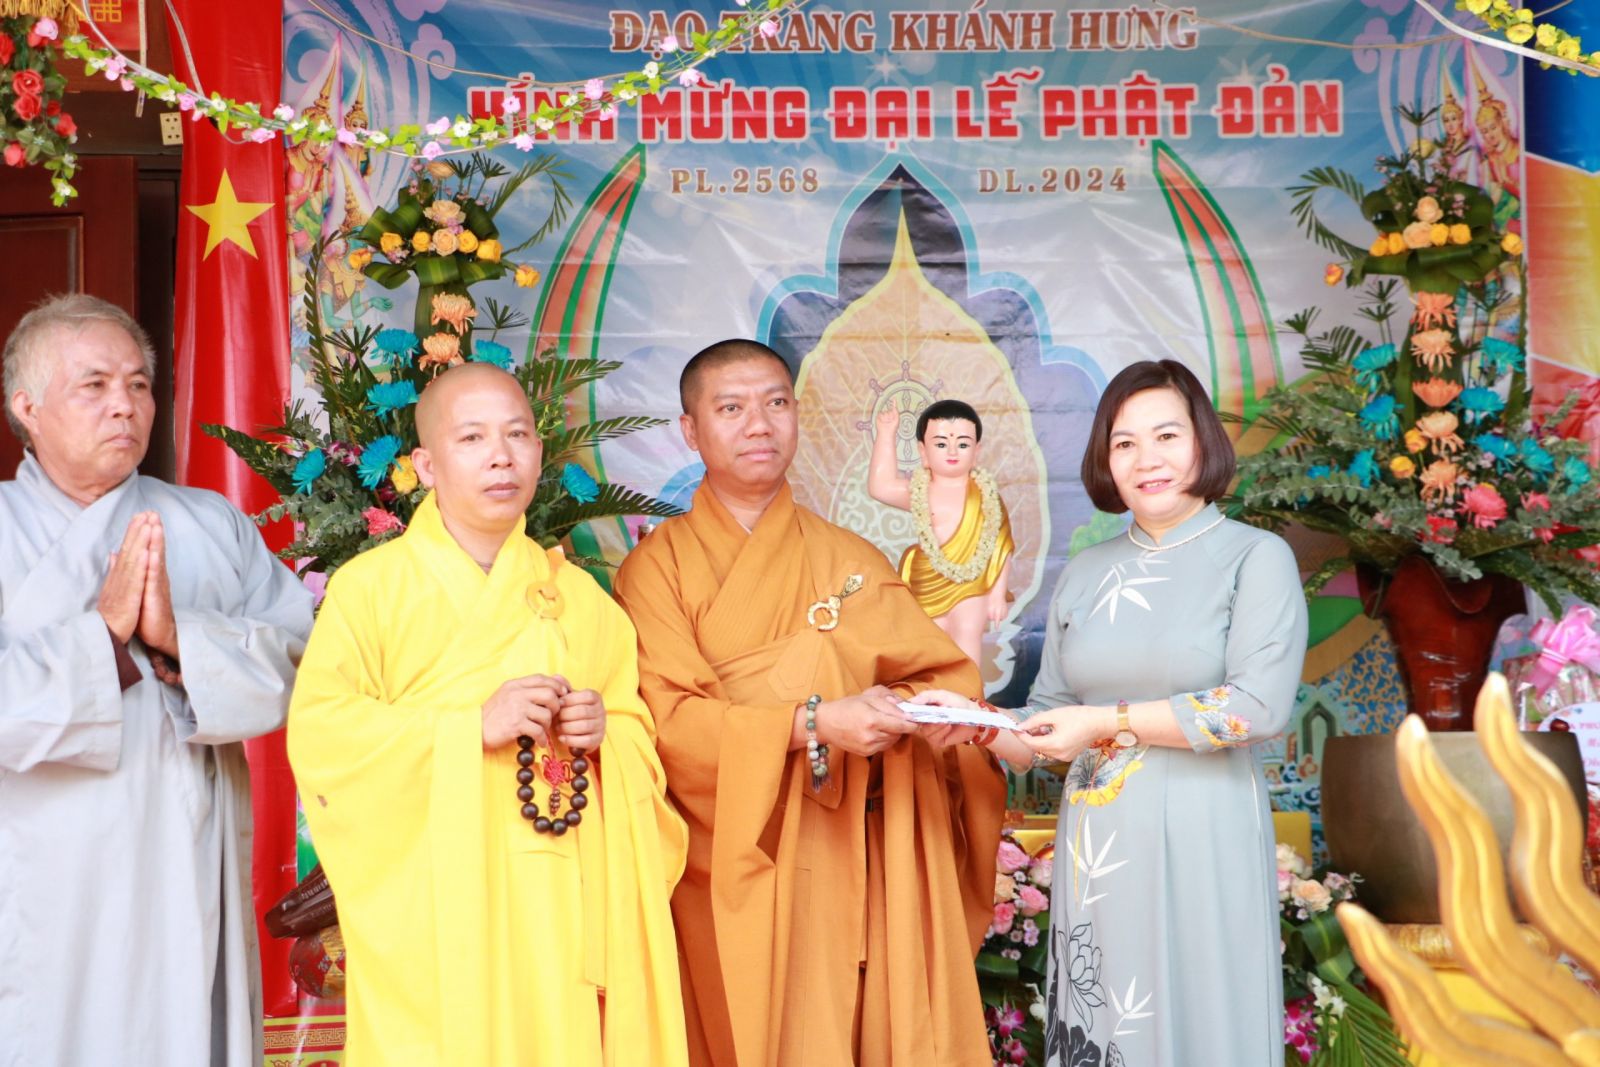 Đắk Song: Đạo tràng Khánh Hưng trang nghiêm tổ chức Đại Lễ Phật Đản PL. 2568